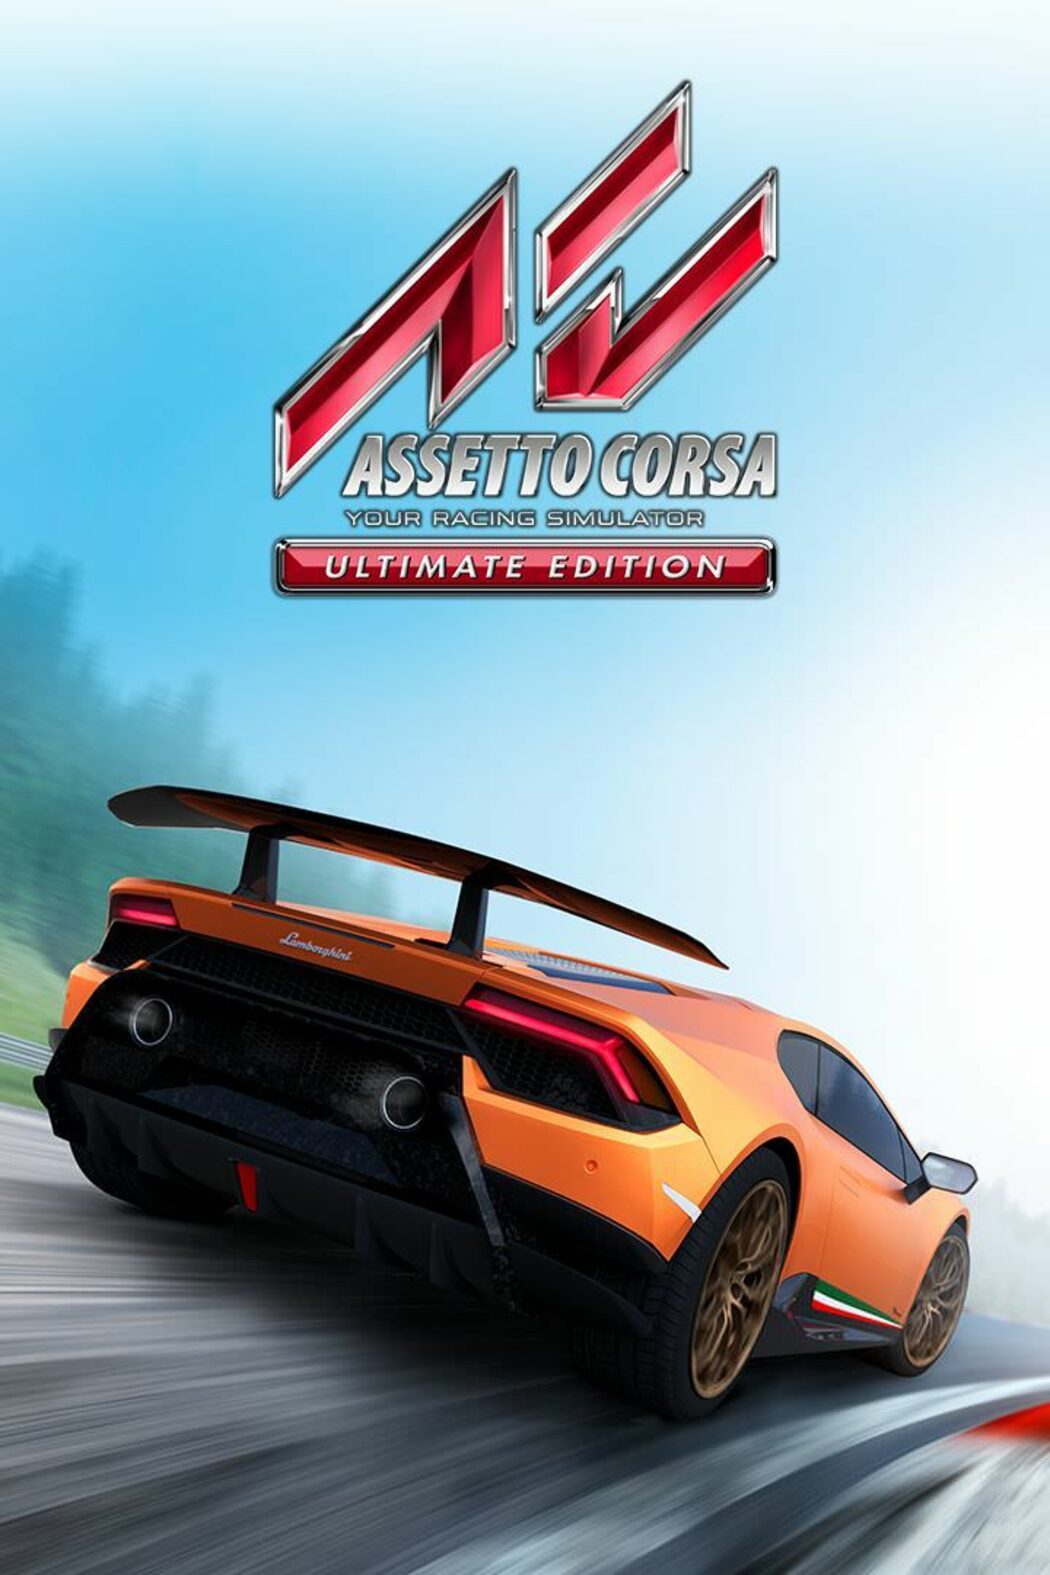 Assetto Corsa Ultimate edition